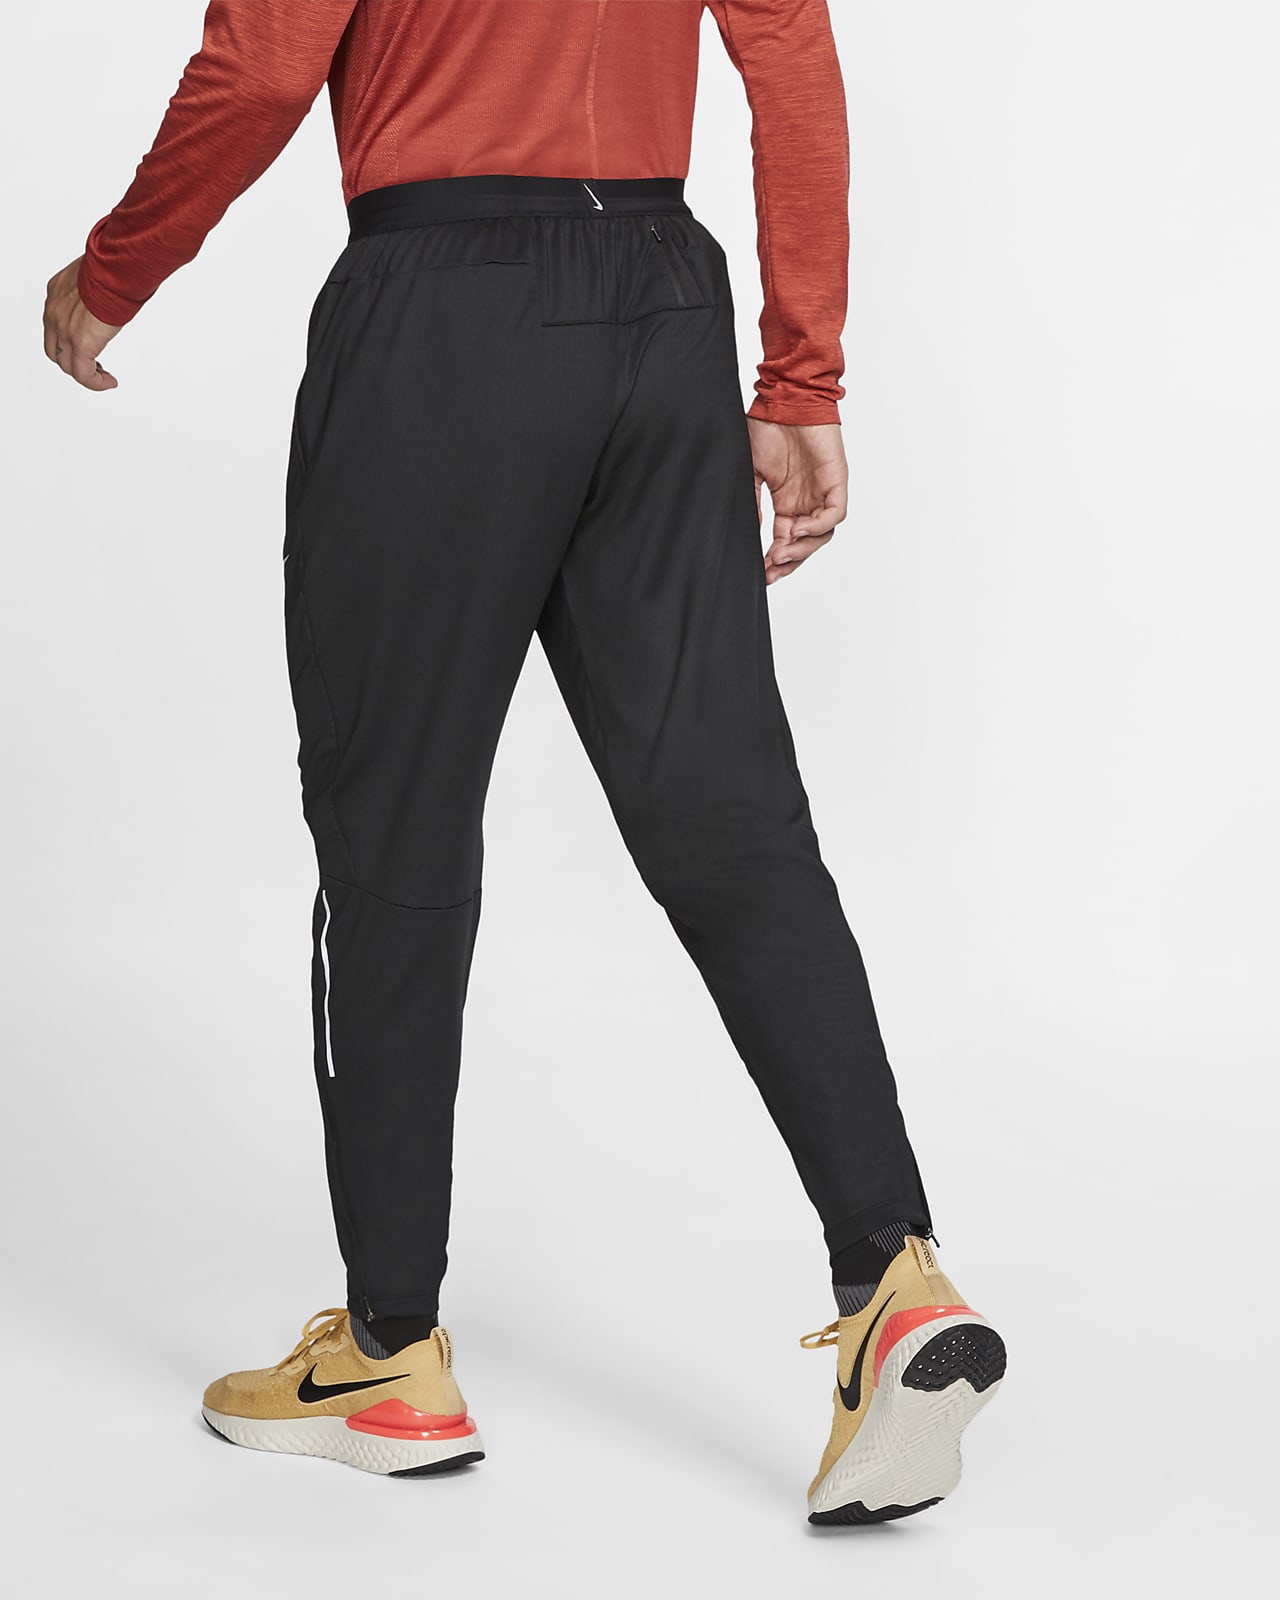 Pantalones tejidos de running para hombre Nike Phenom. Nike.com